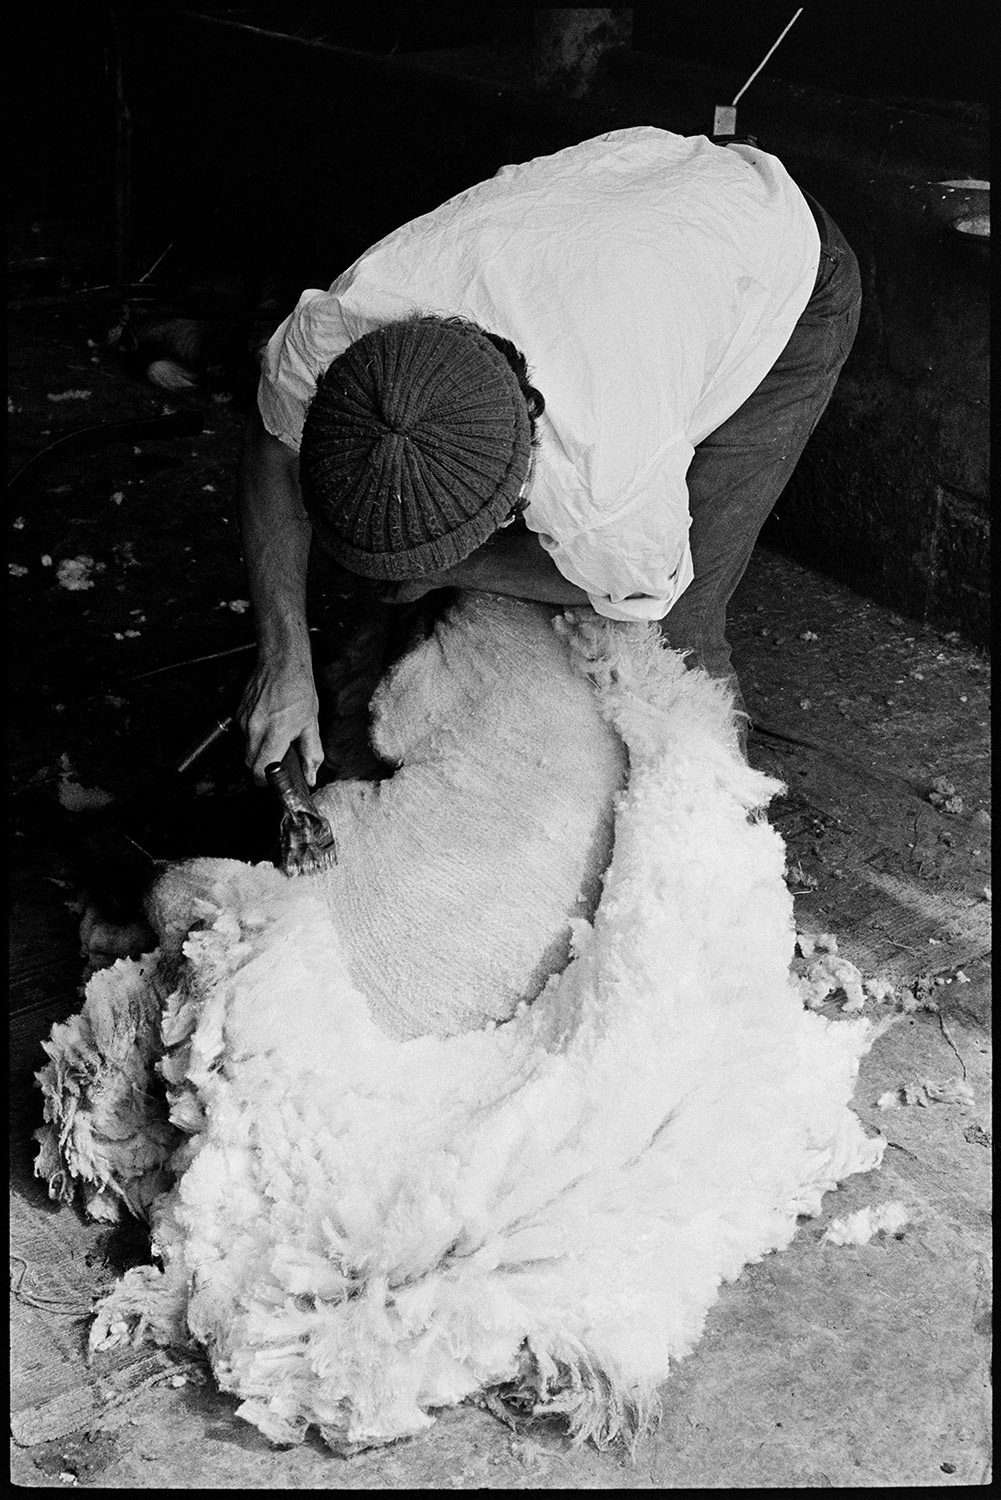 Shearing sheep. 
[David Ward shearing a sheep using a shearing machine in a barn at Parsonage, Iddesleigh.]